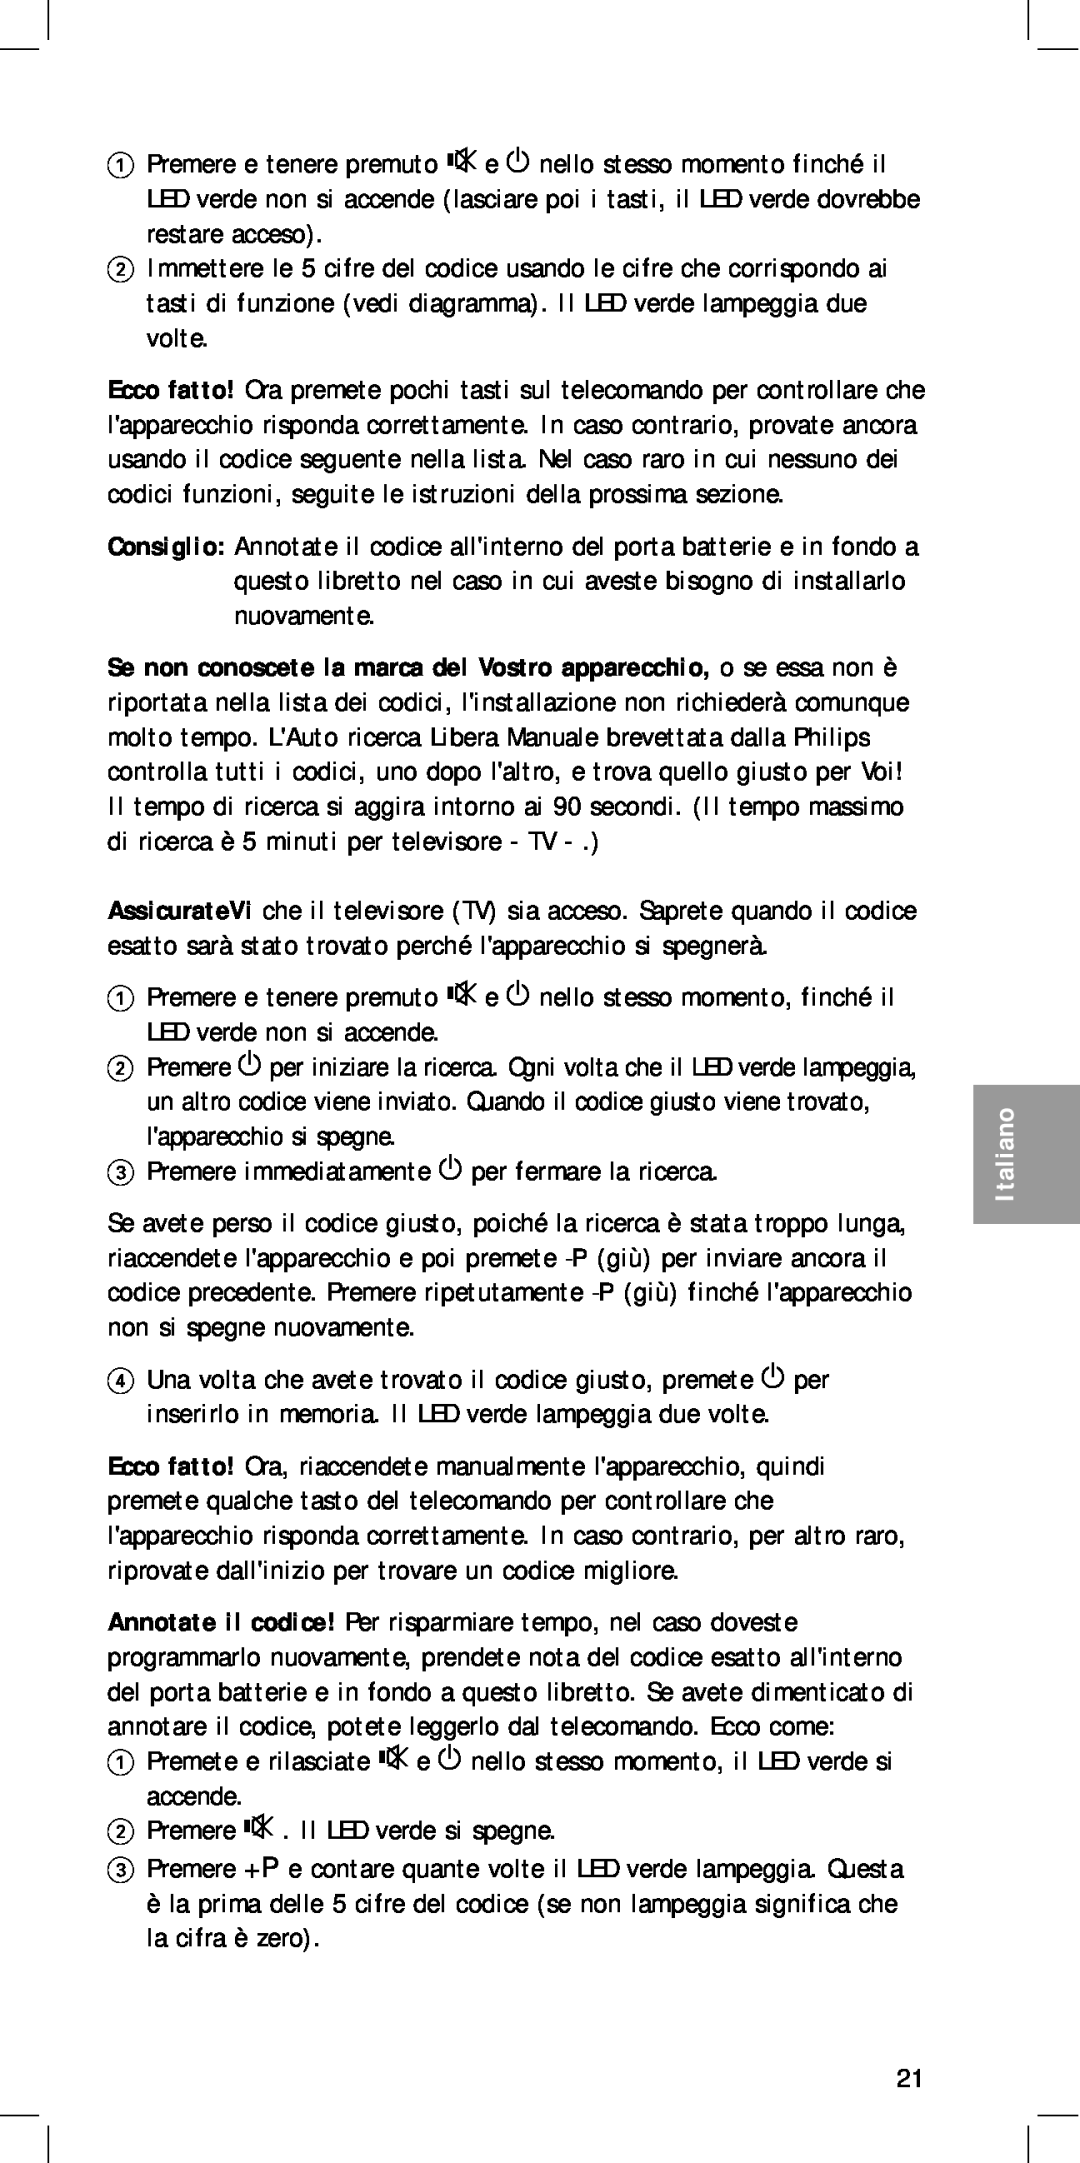 Philips MC-110 manual Premere immediatamente y per fermare la ricerca, Italiano 